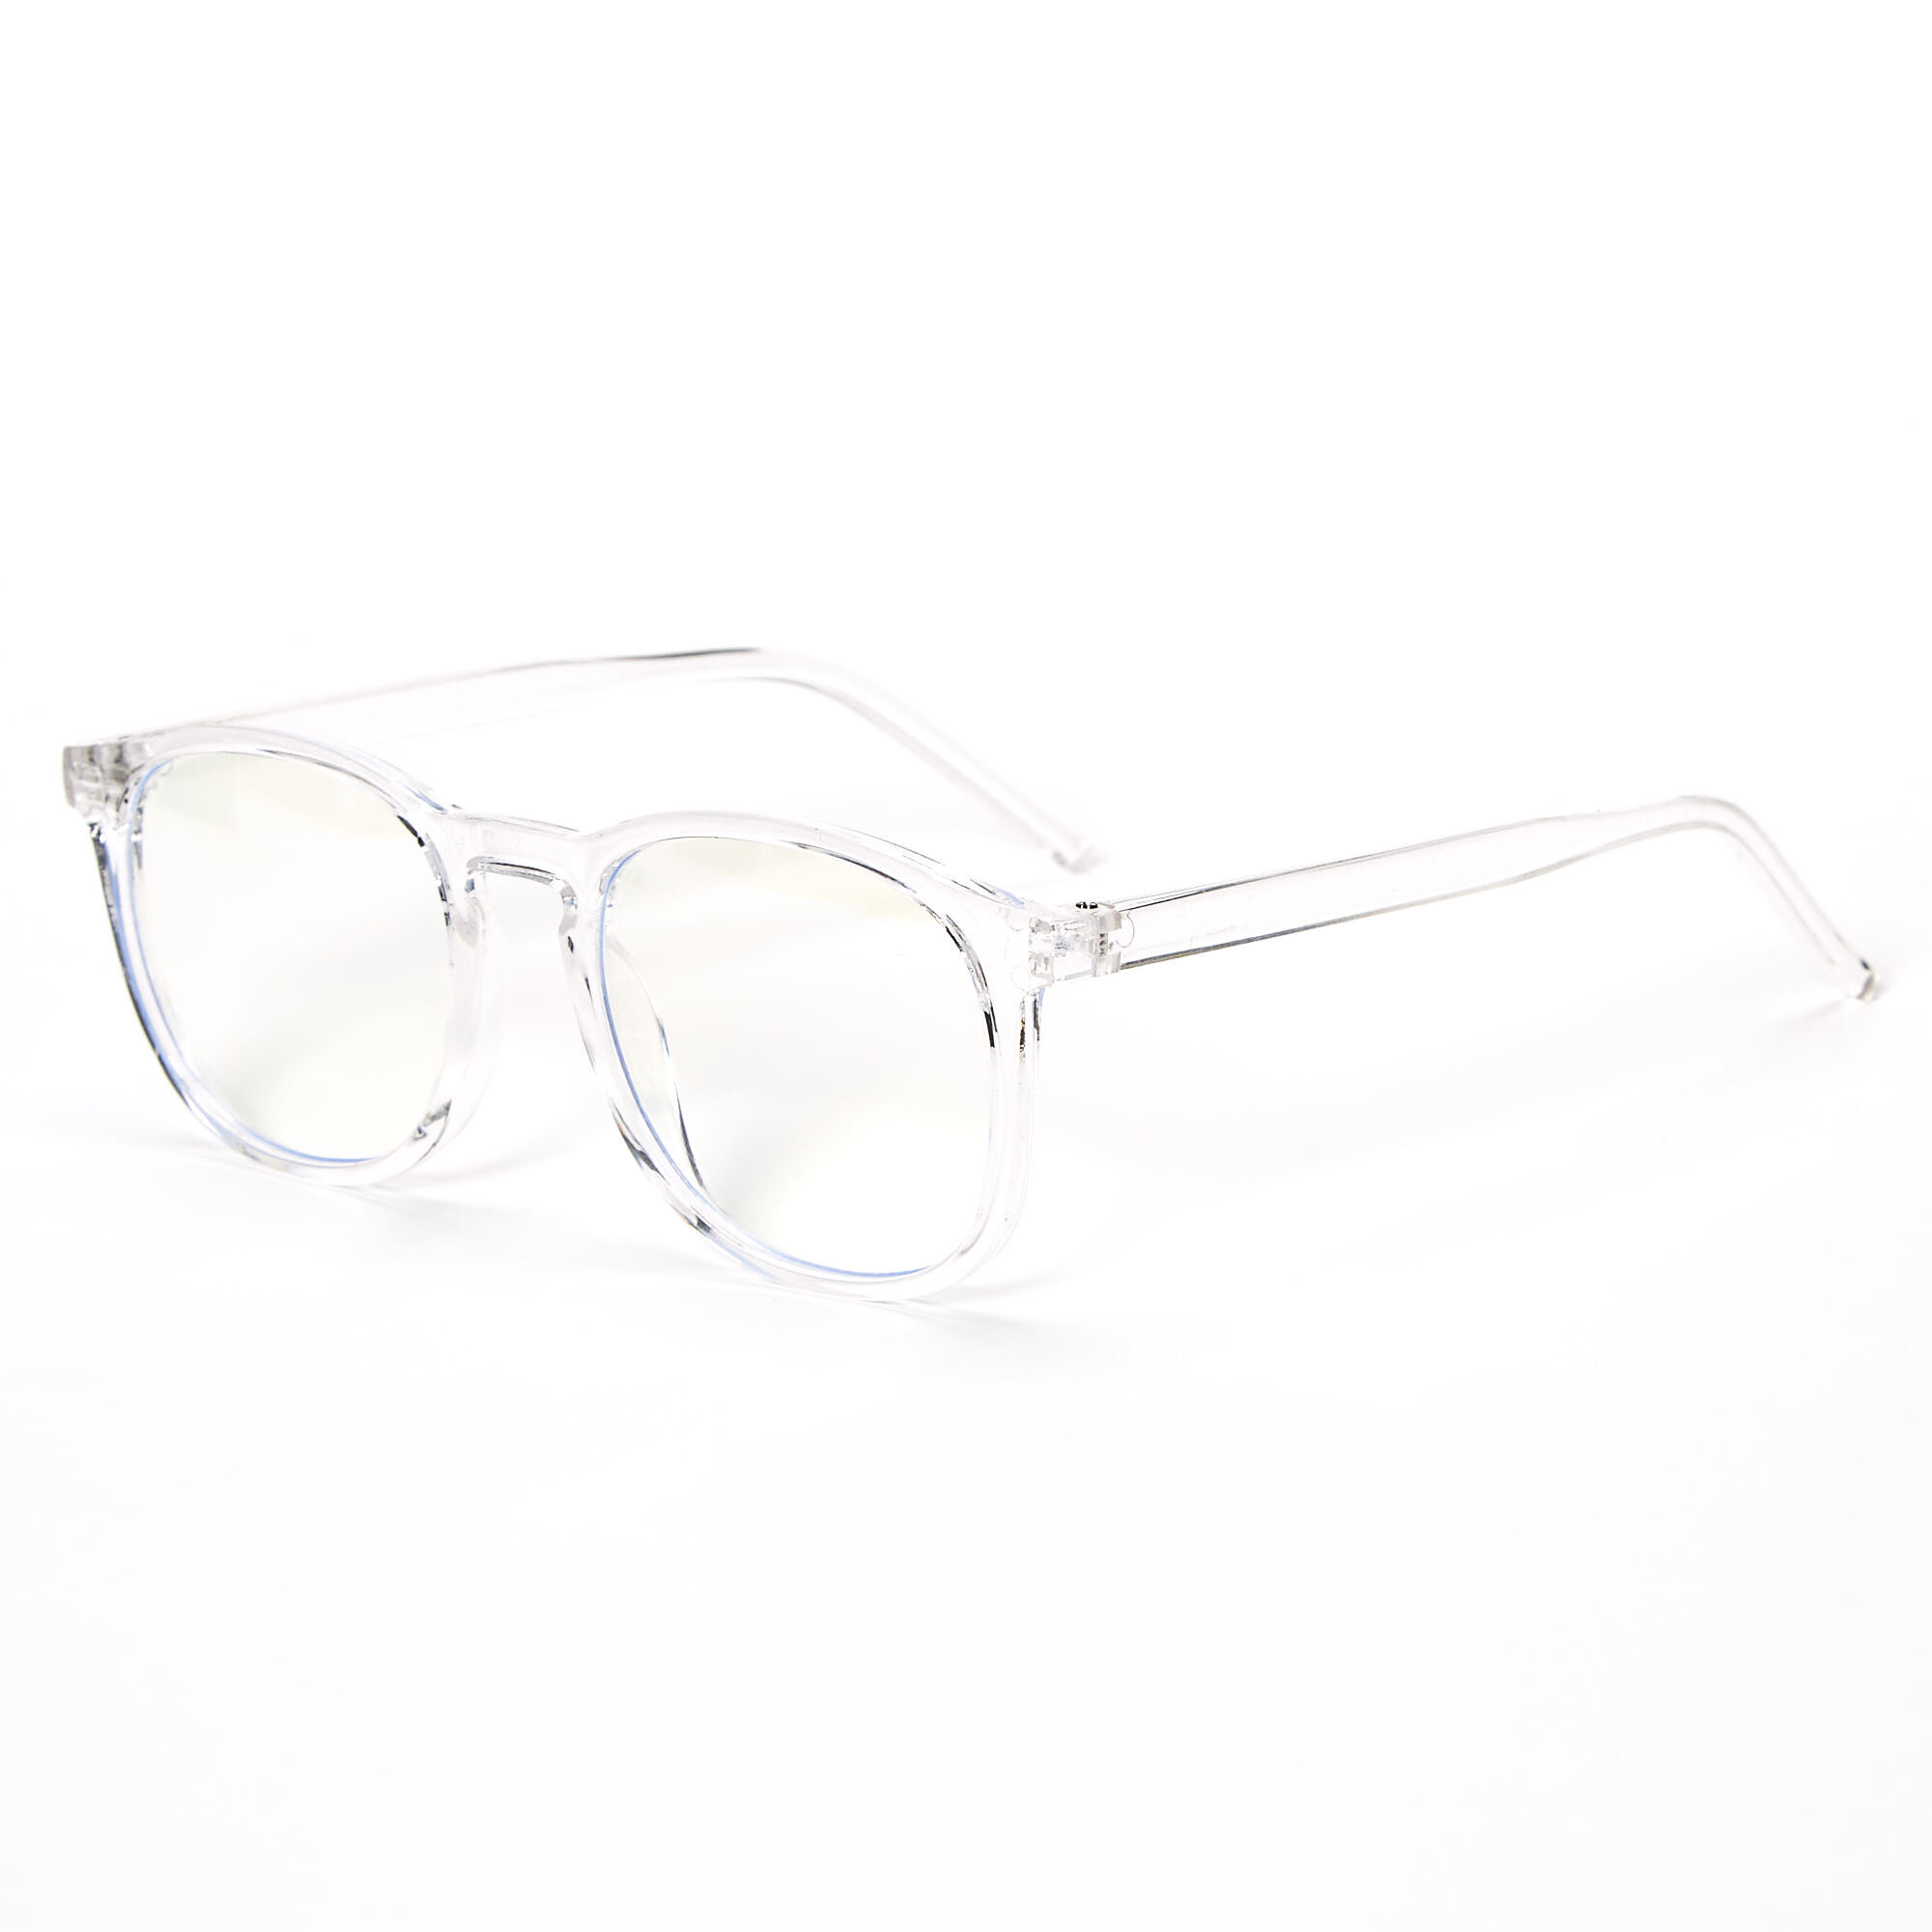 Blue Light Clear Frame Glasses